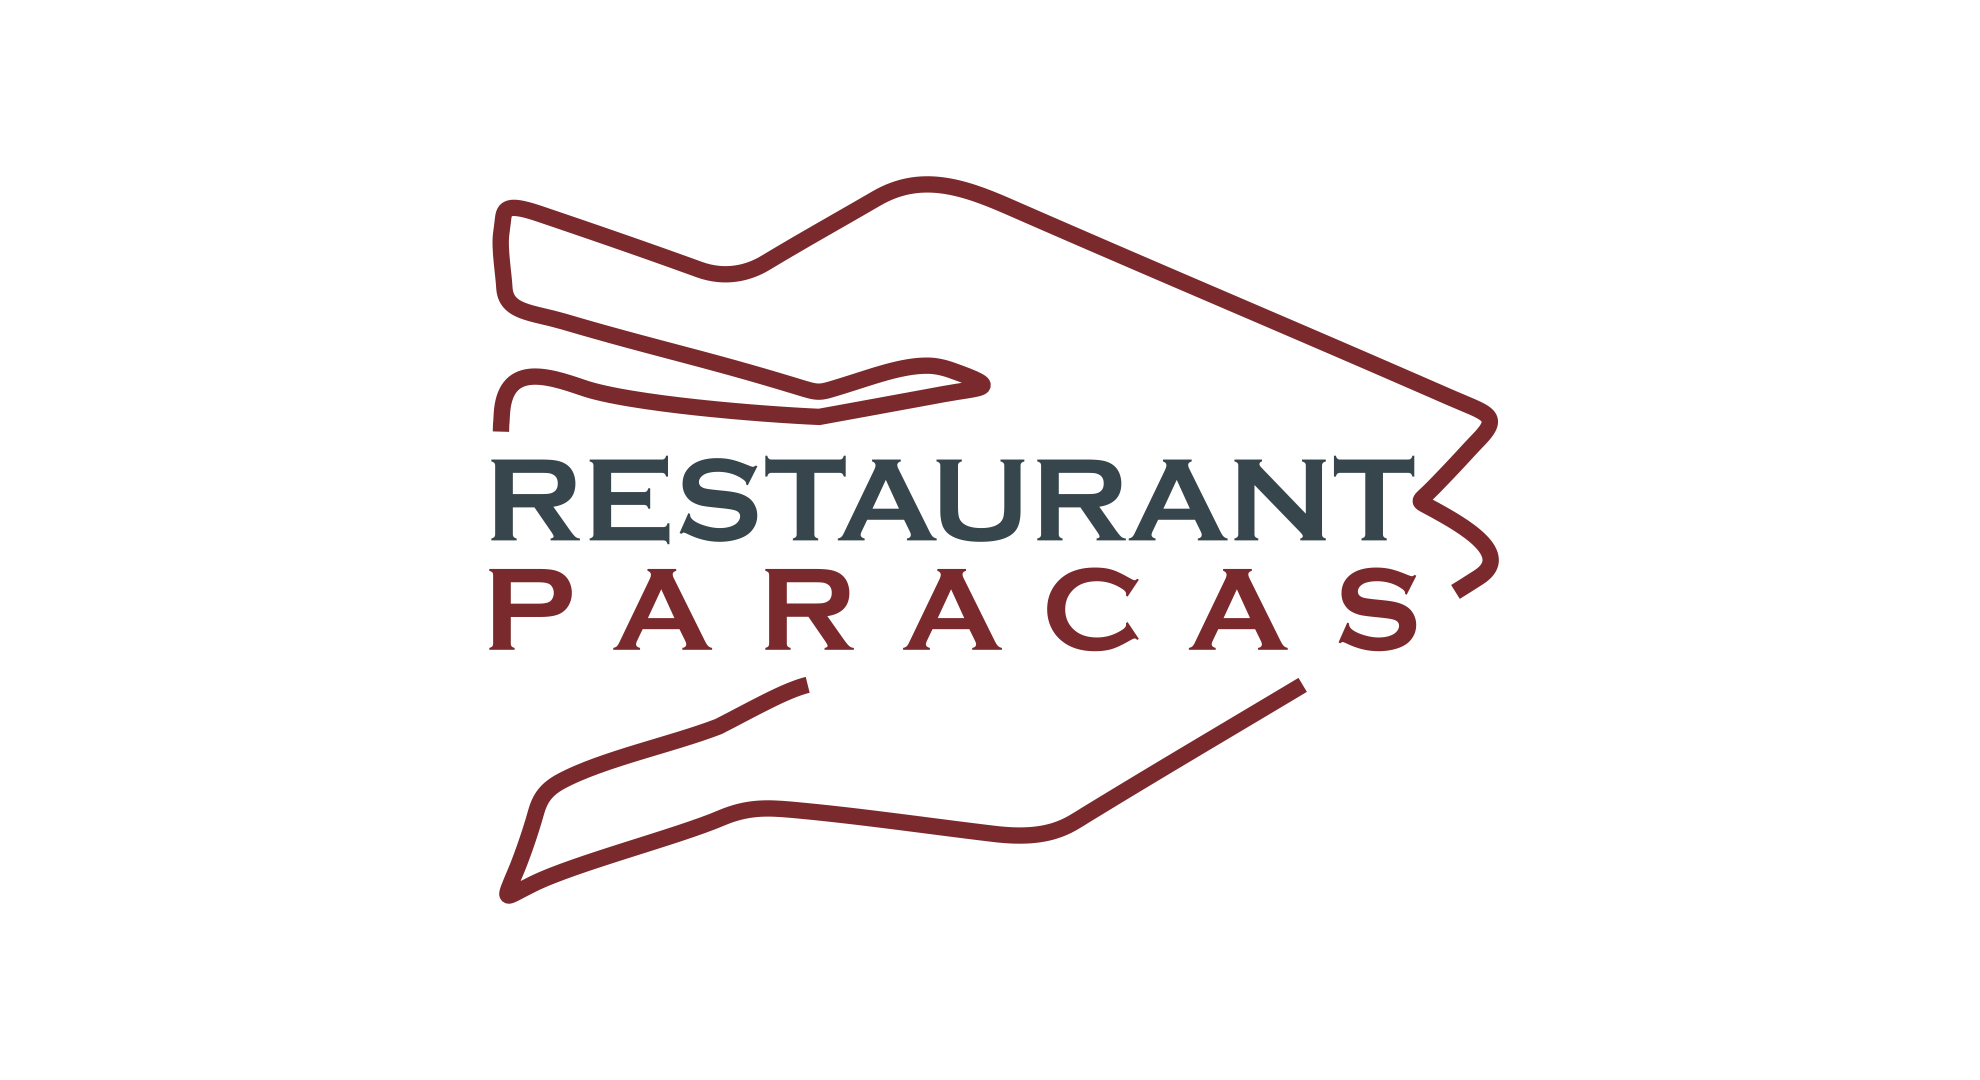 (c) Restaurantparacas.com